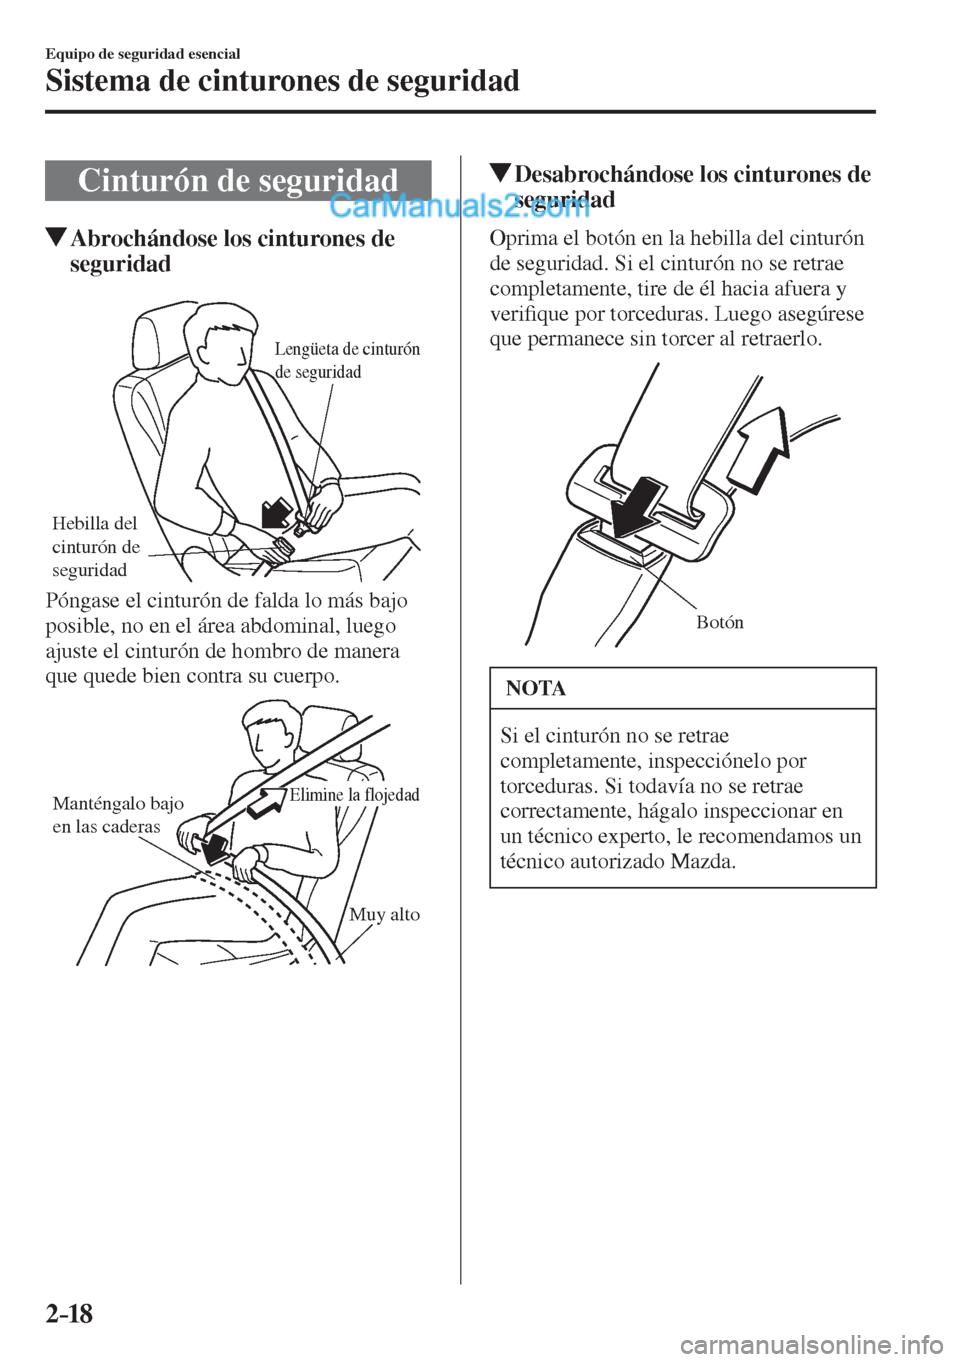 MAZDA MODEL 2 2017  Manual del propietario (in Spanish) 2–18
Equipo de seguridad esencial
Sistema de cinturones de seguridad
 Cinturón de seguridad
                   Abrochándose los cinturones de 
seguridad
   
Hebilla del 
cinturón de 
seguridad
Le